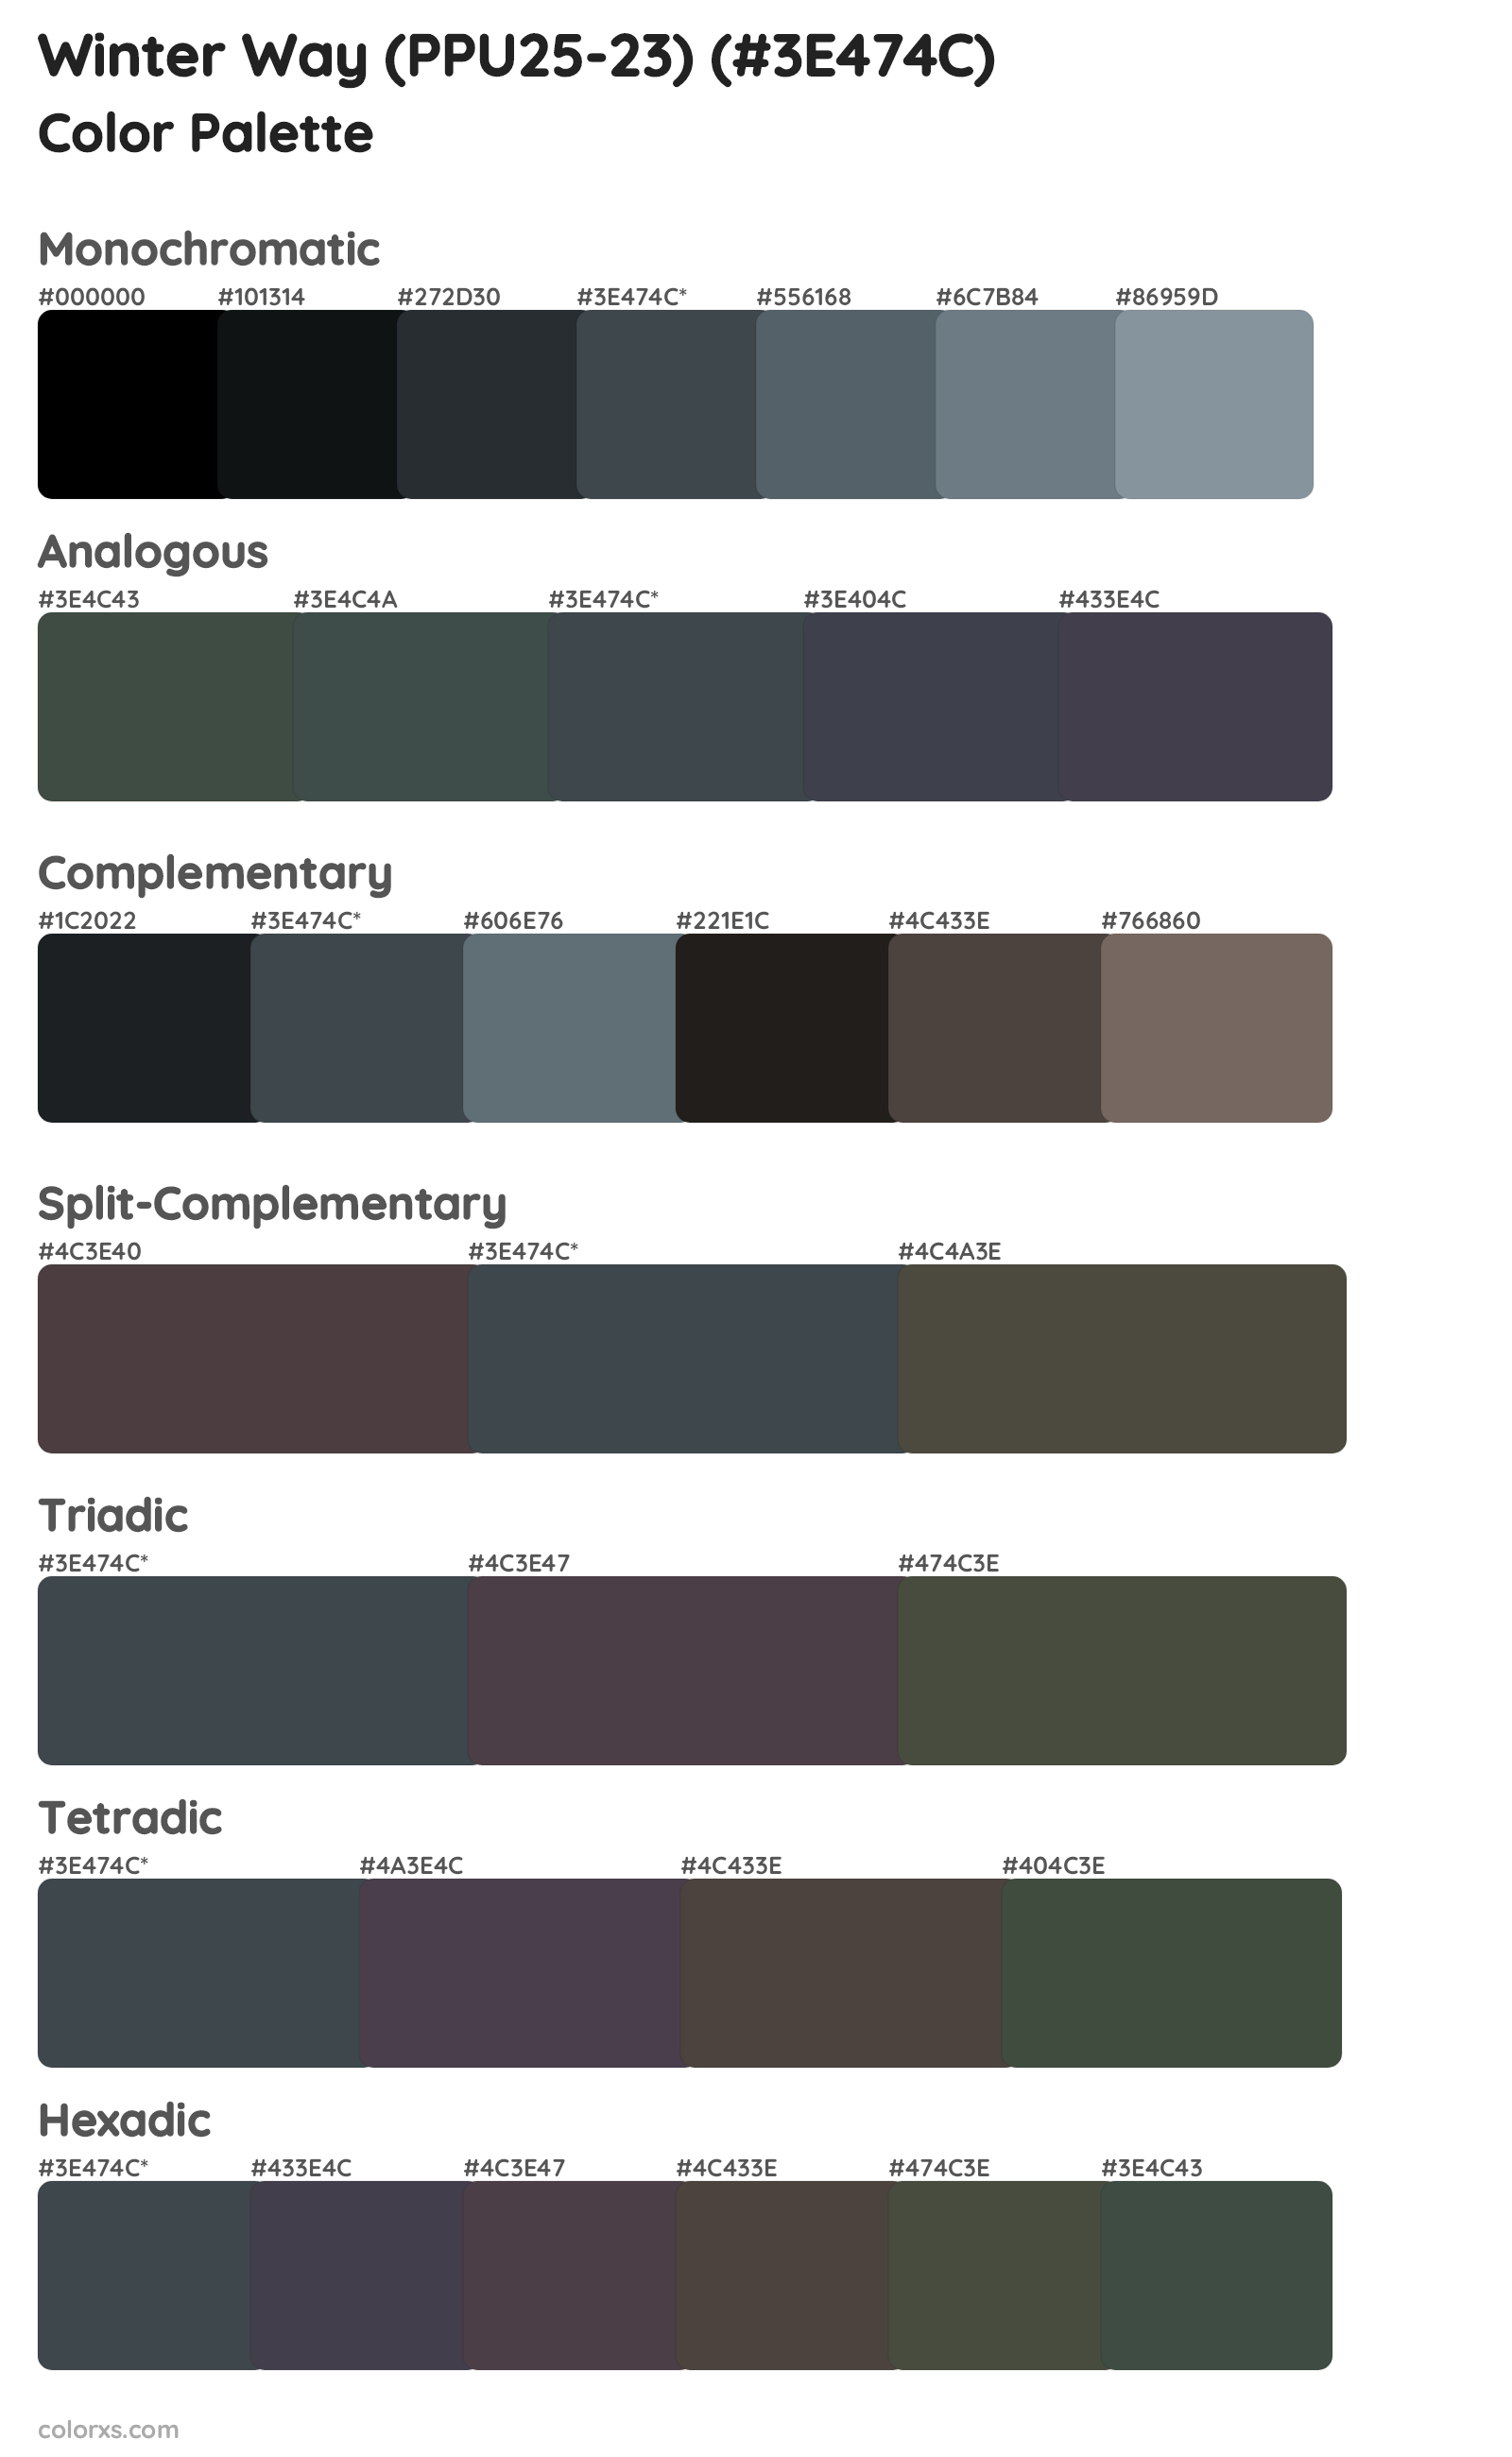 Winter Way (PPU25-23) Color Scheme Palettes